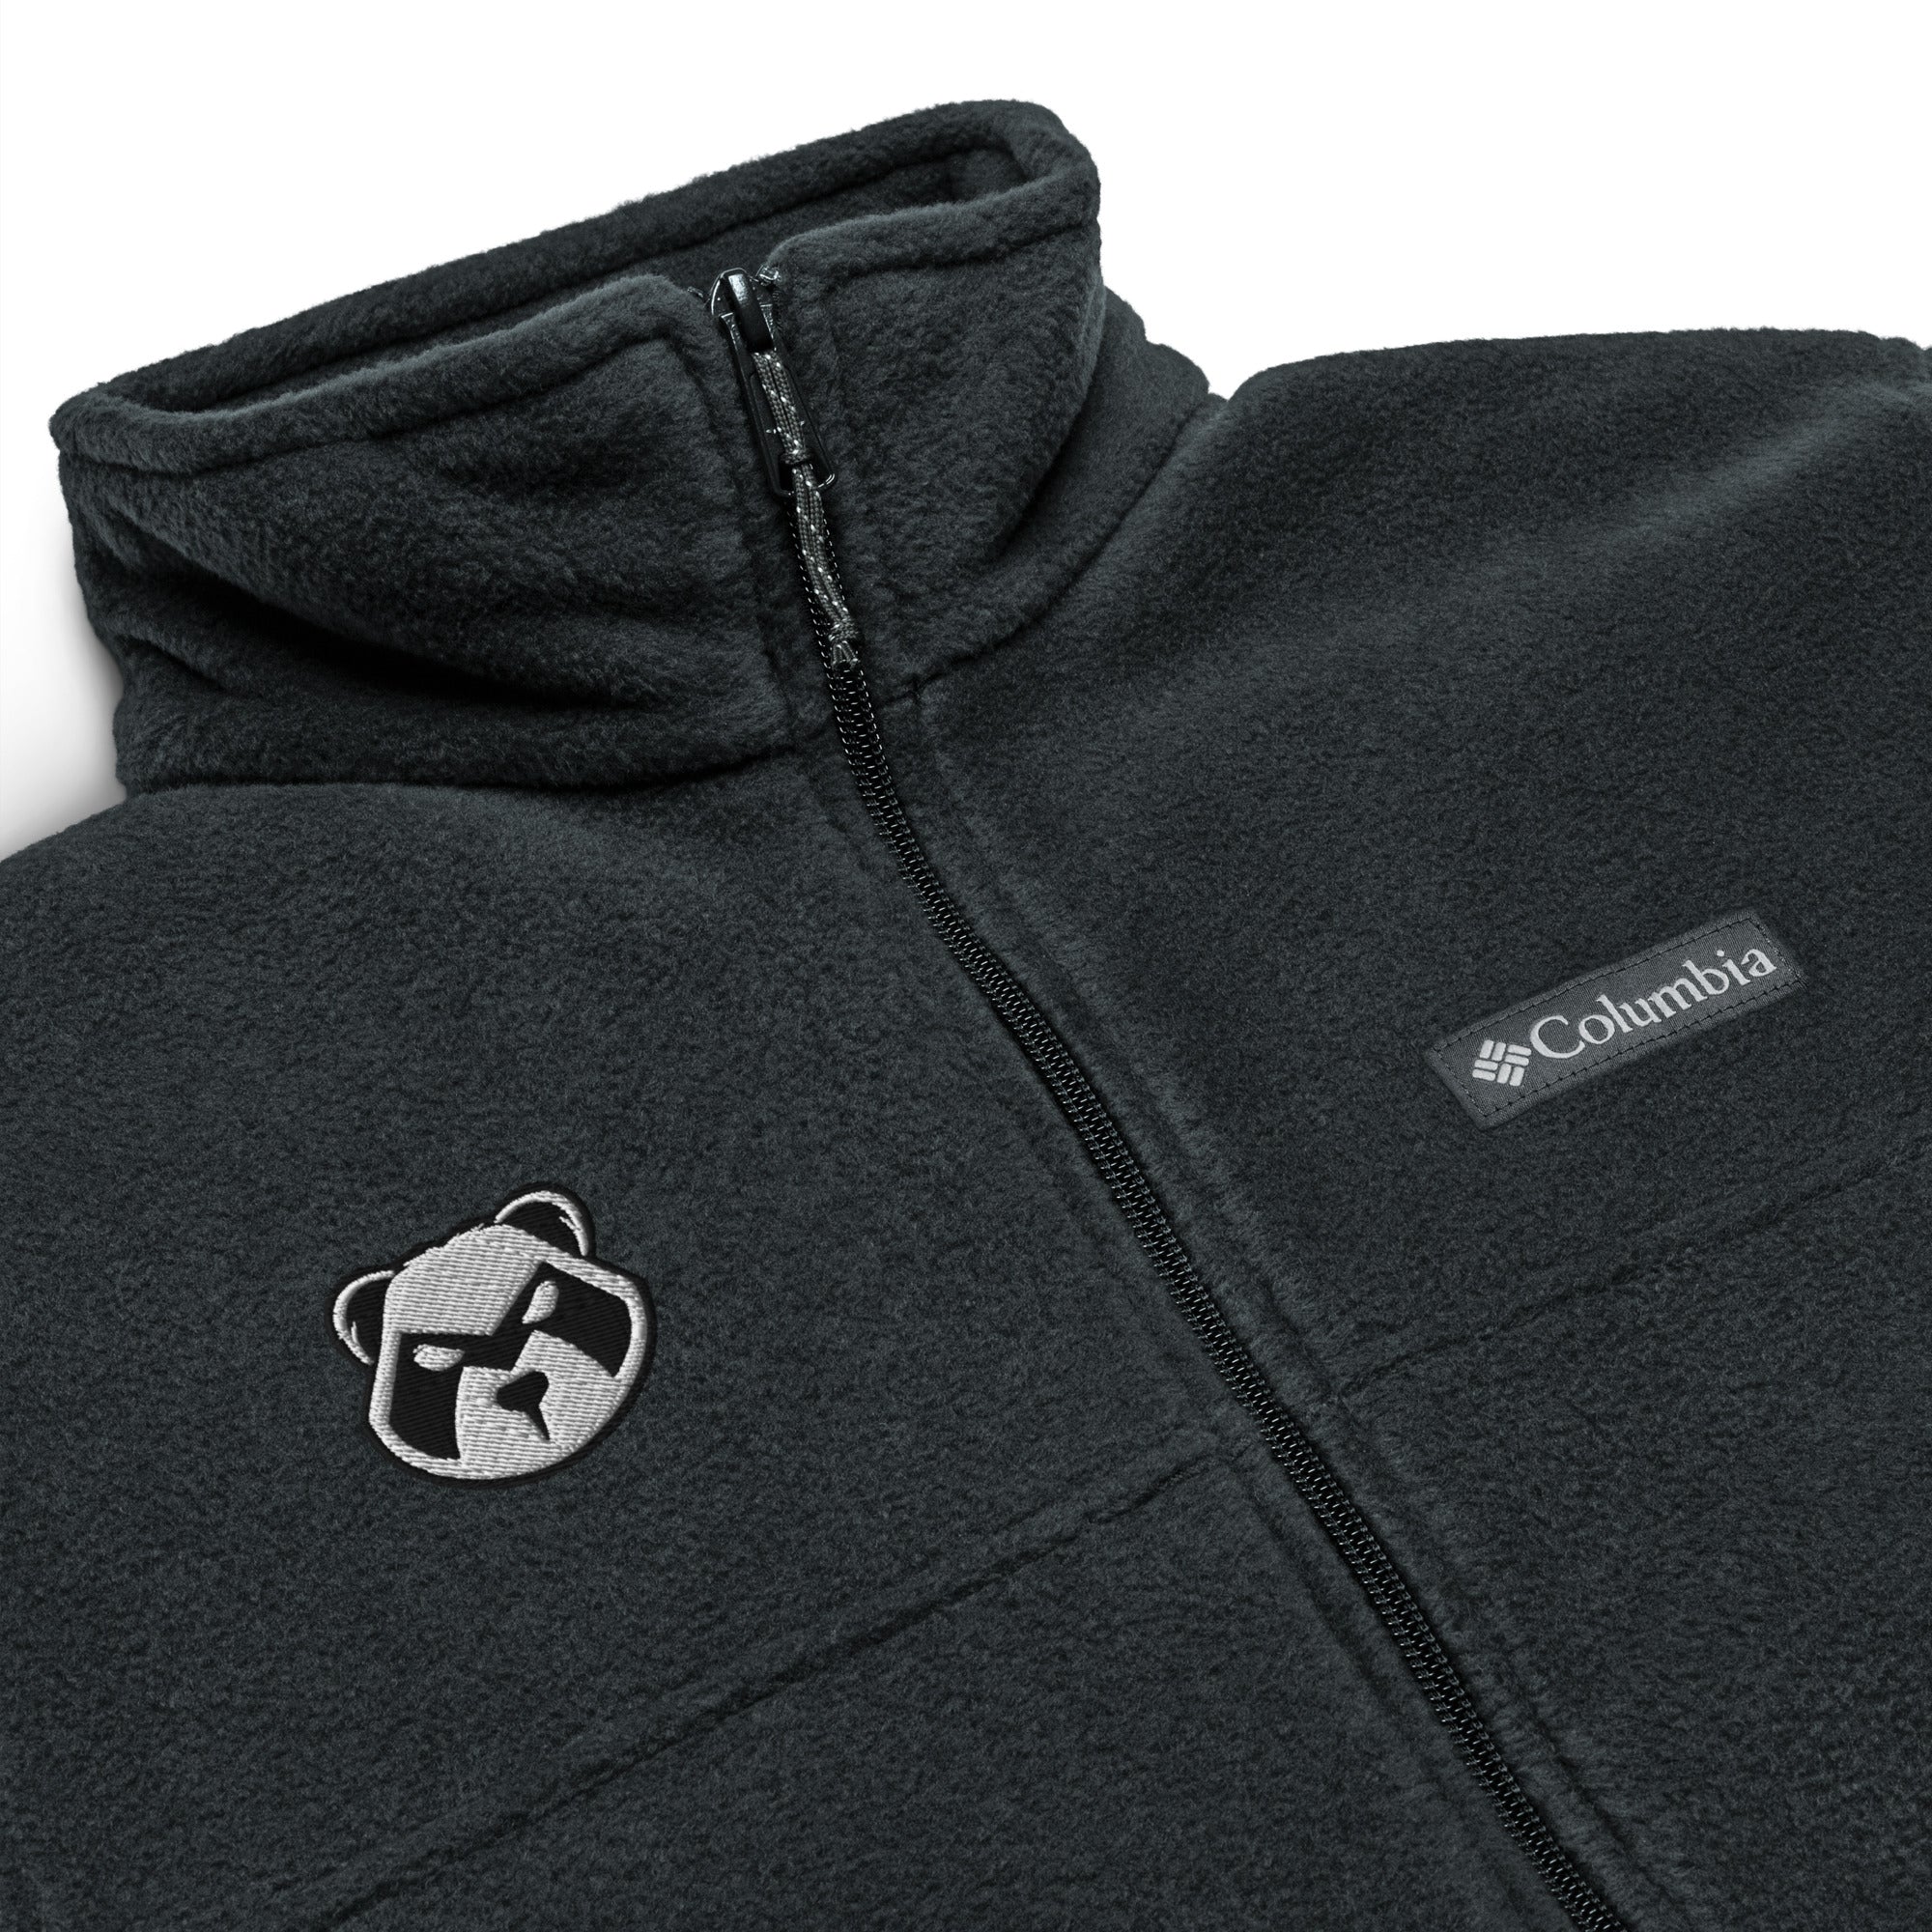 Panda Mastro Logo Unisex Columbia fleece jacket